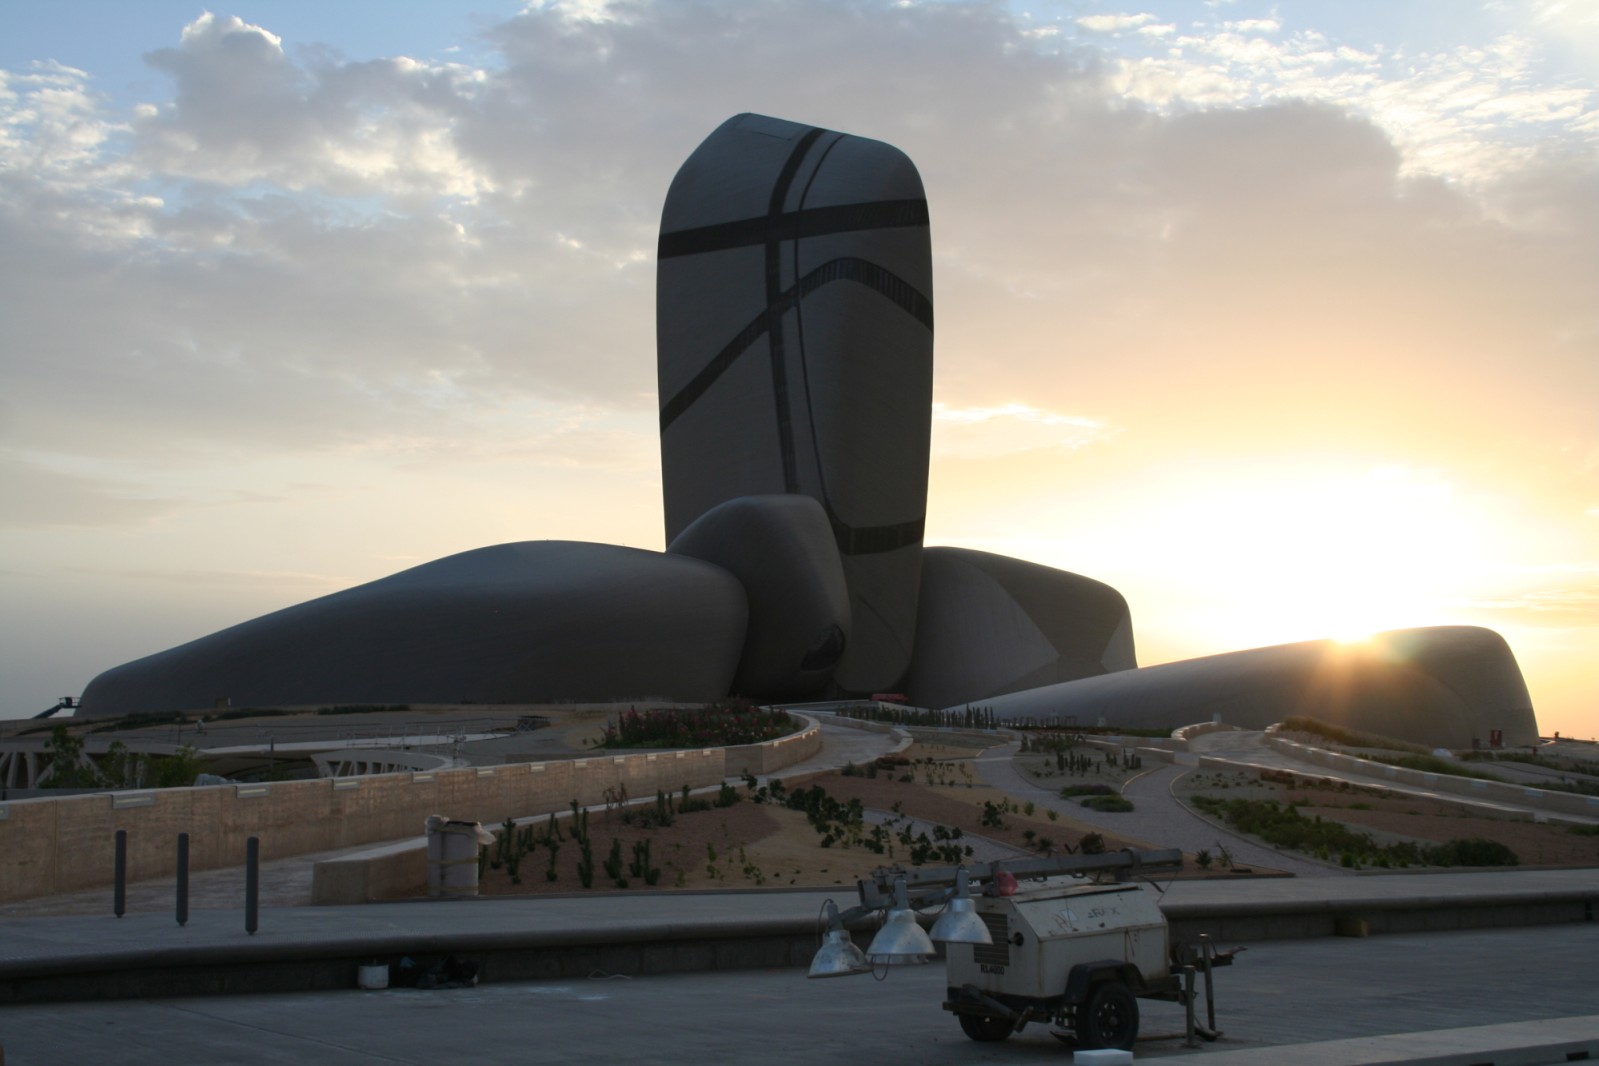 King Abdulaziz Centre for World Culture